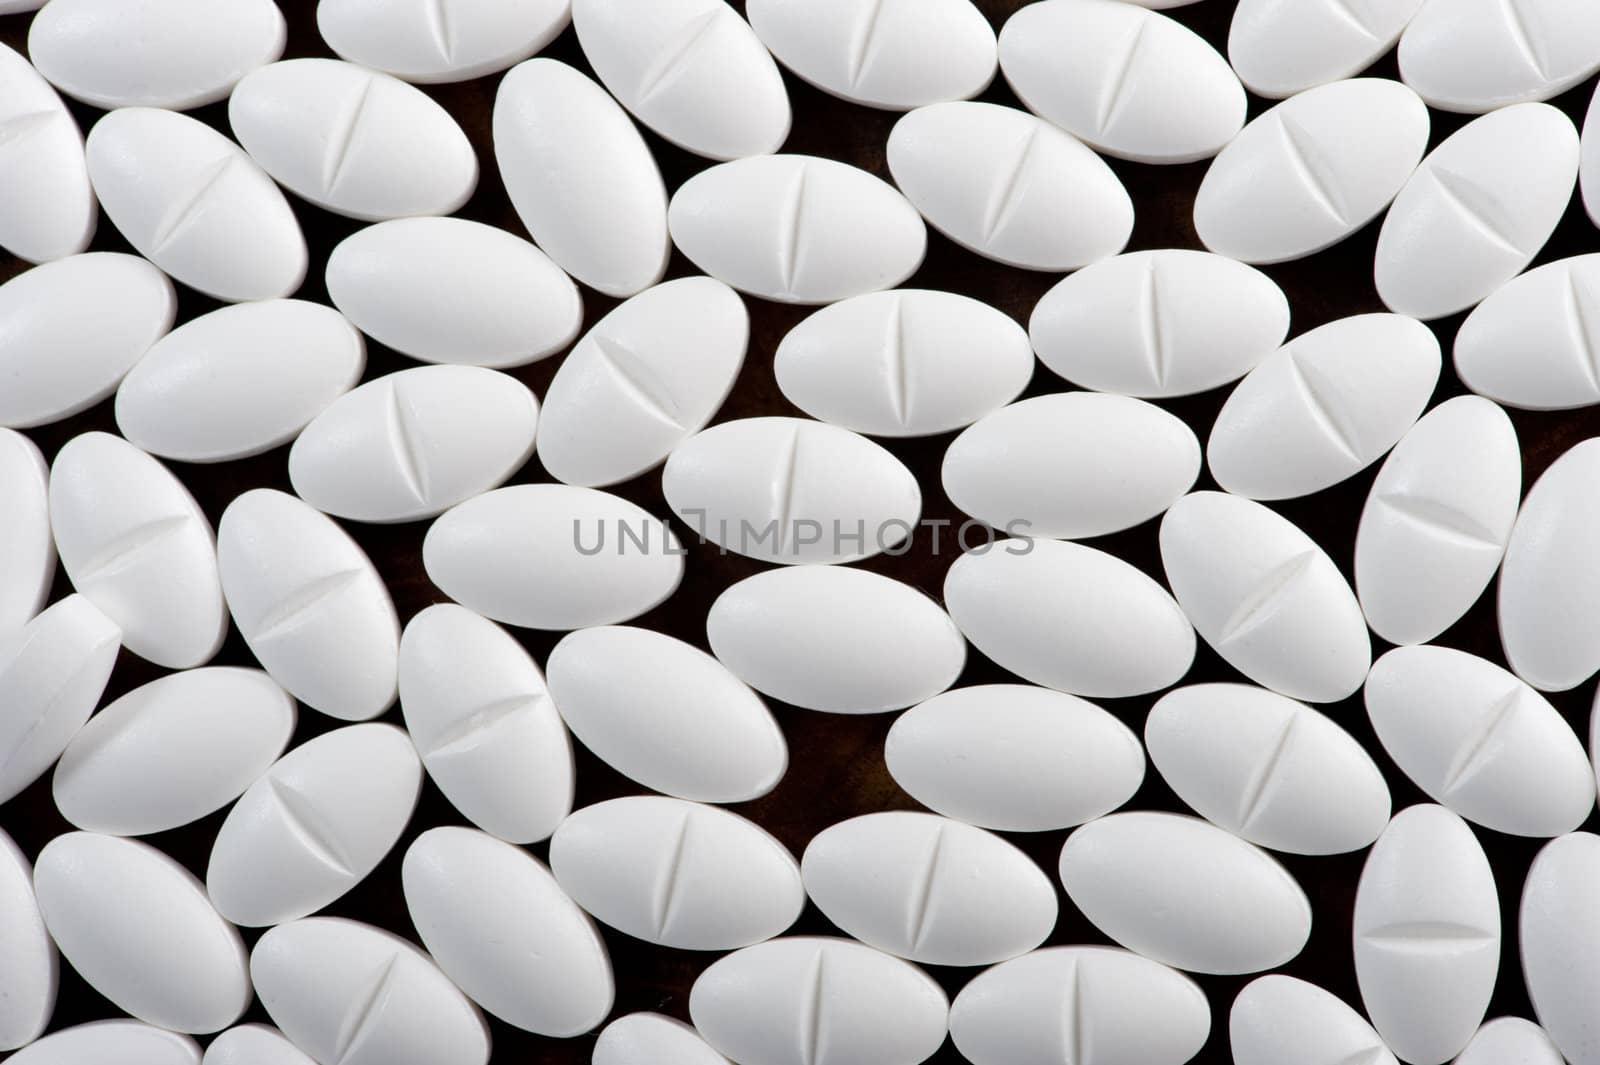 White pills seen on dark background by fljac